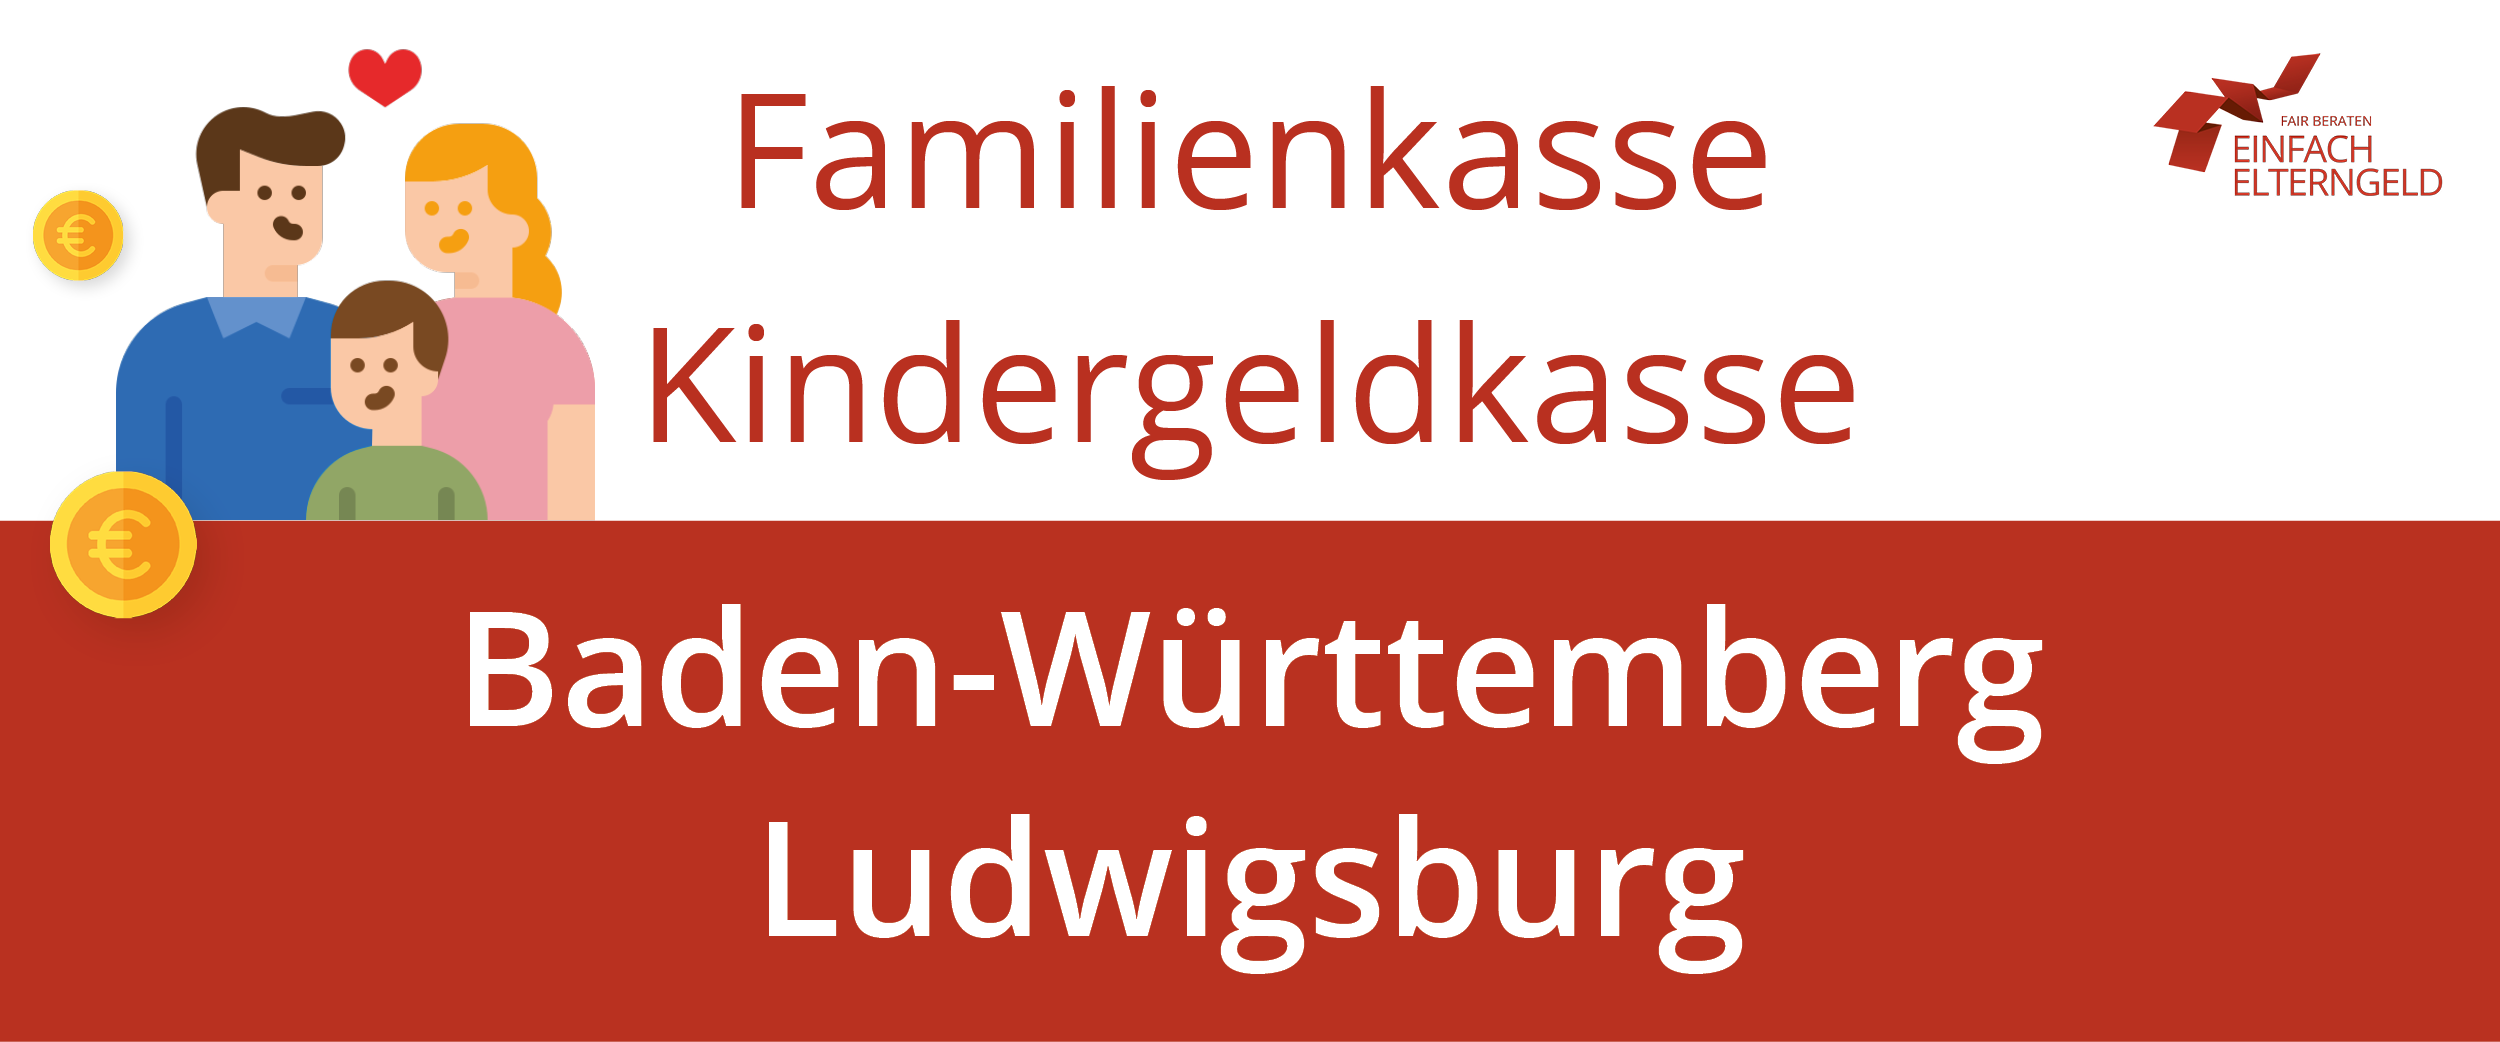 Familienkasse Kindergeldkasse Baden-Württemberg Ludwigsburg - So erreichen Sie Ihre Familienkasse.